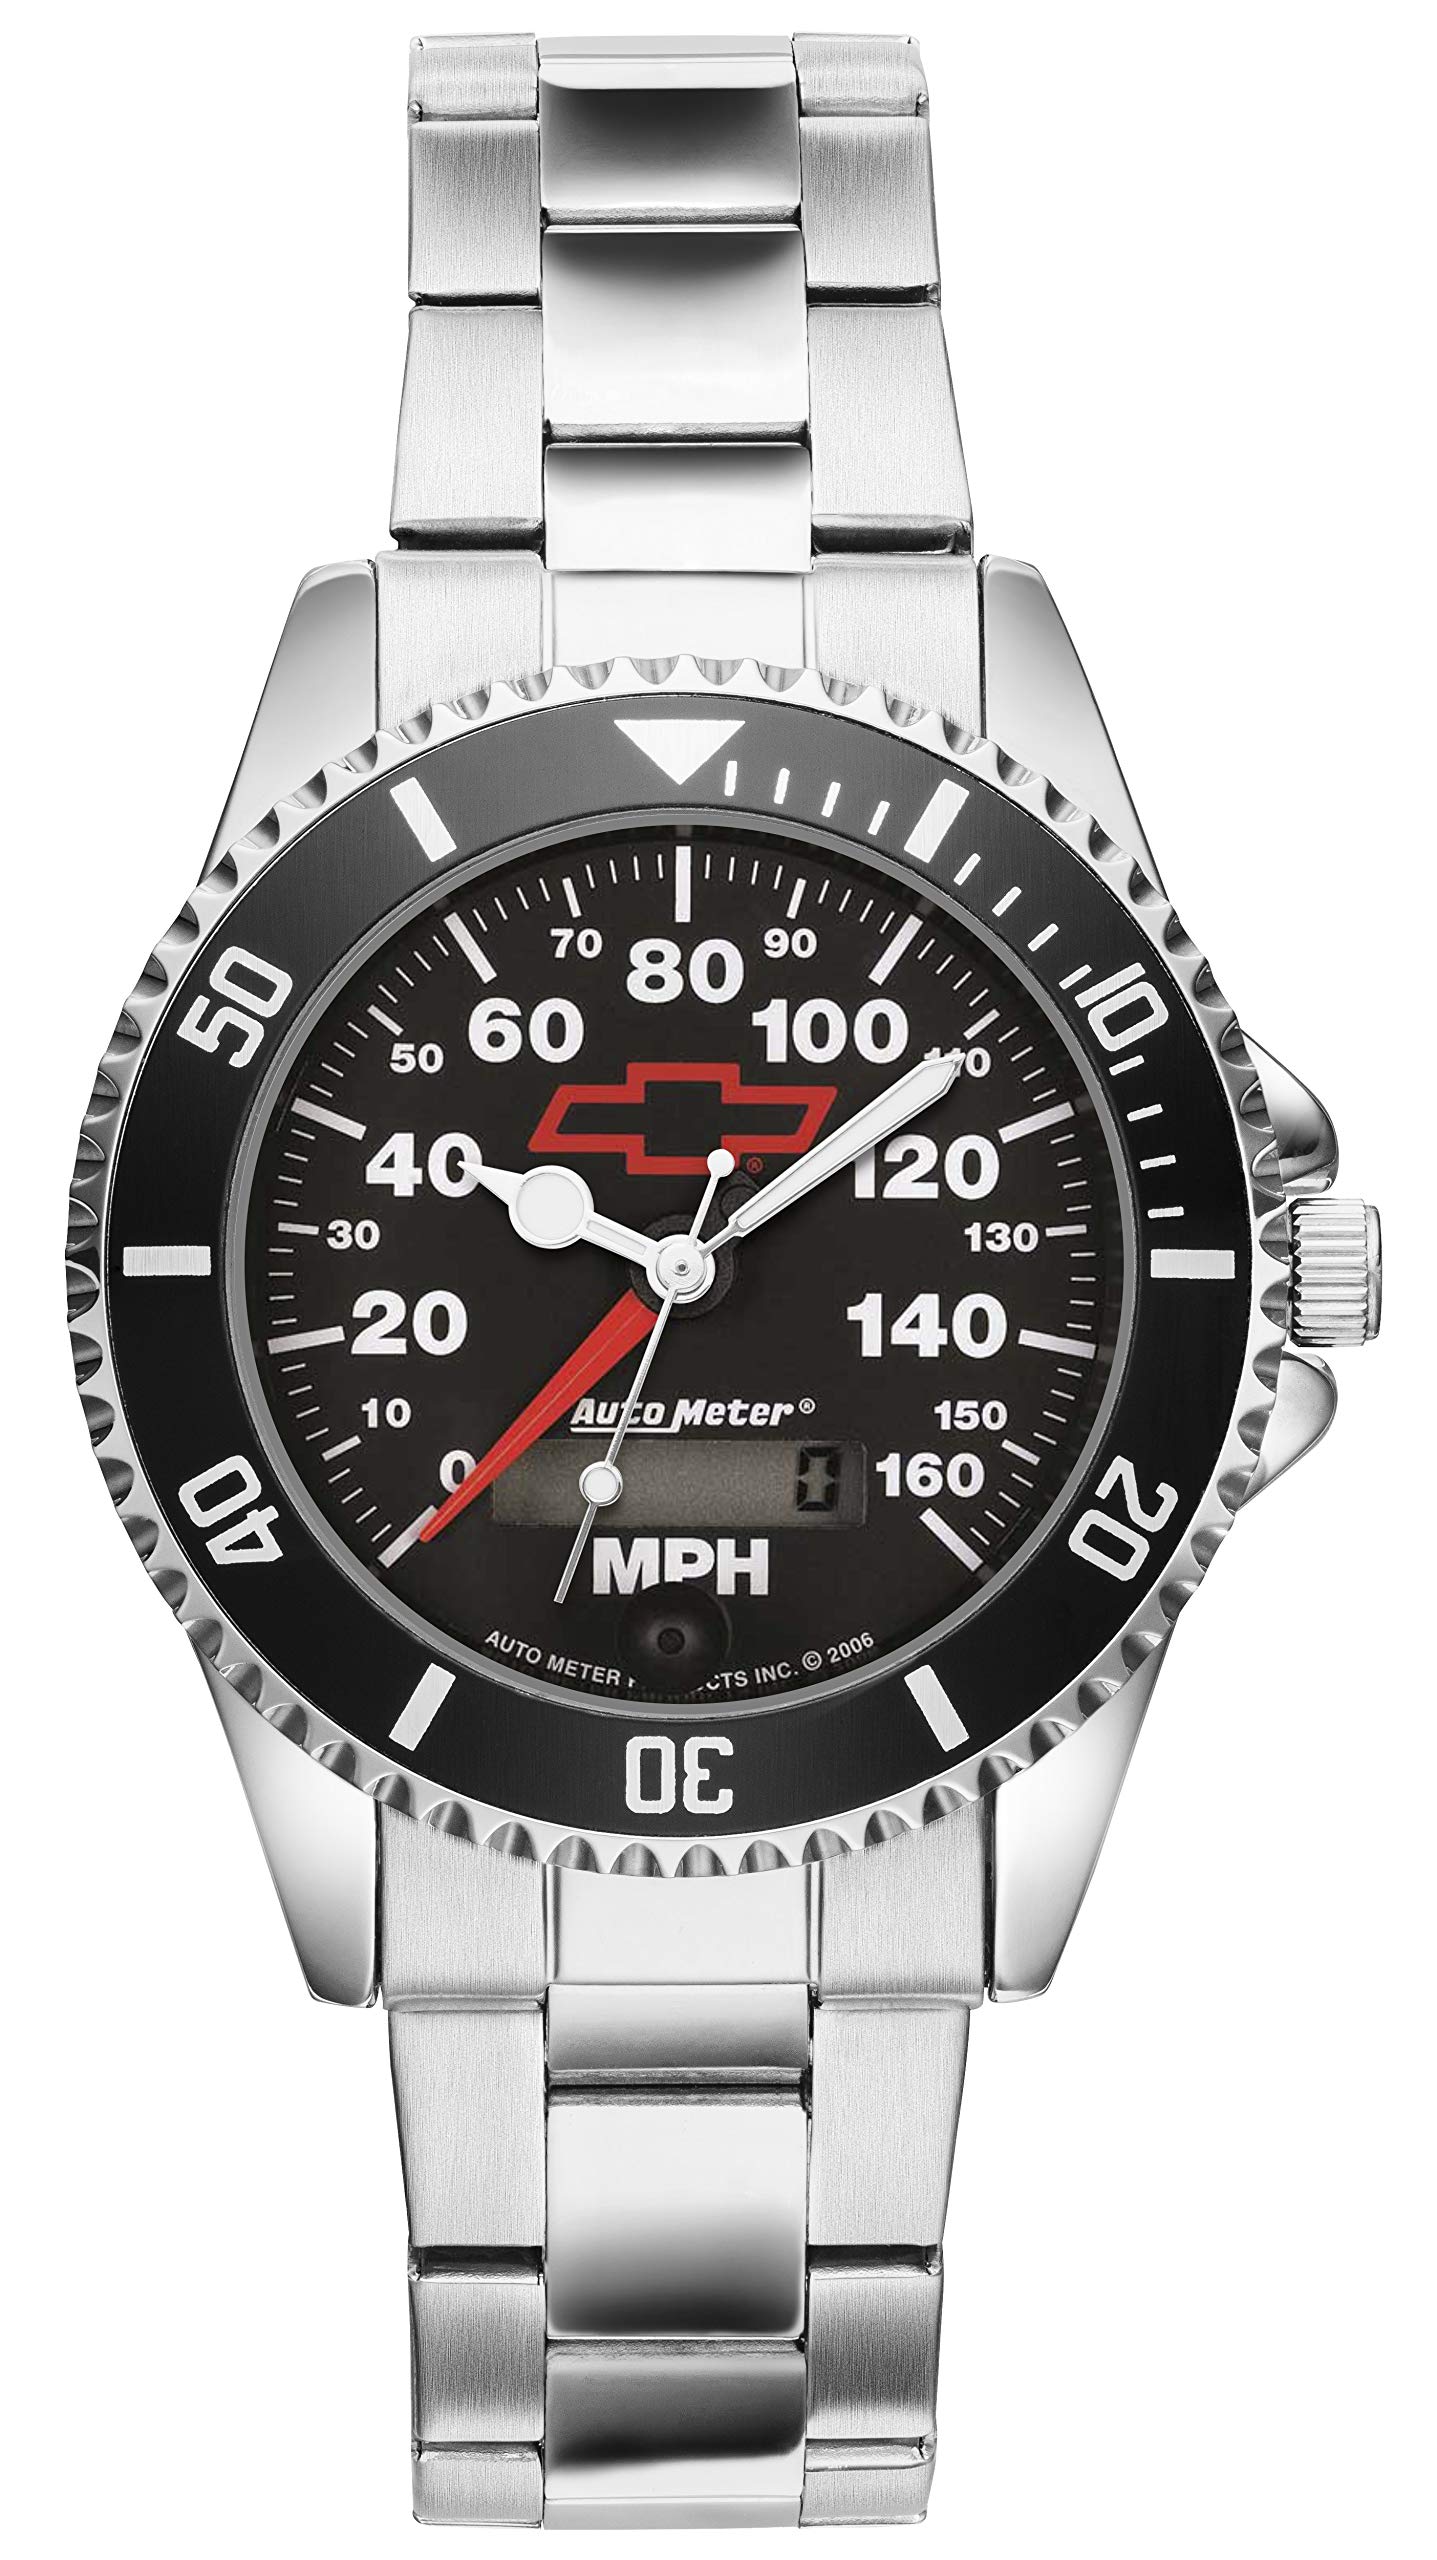 KIESENBERG Men's Watch Gift for Chevrolet Camaro Fans Cockpit Speedo Quartz Analog Wrist Watch 20634